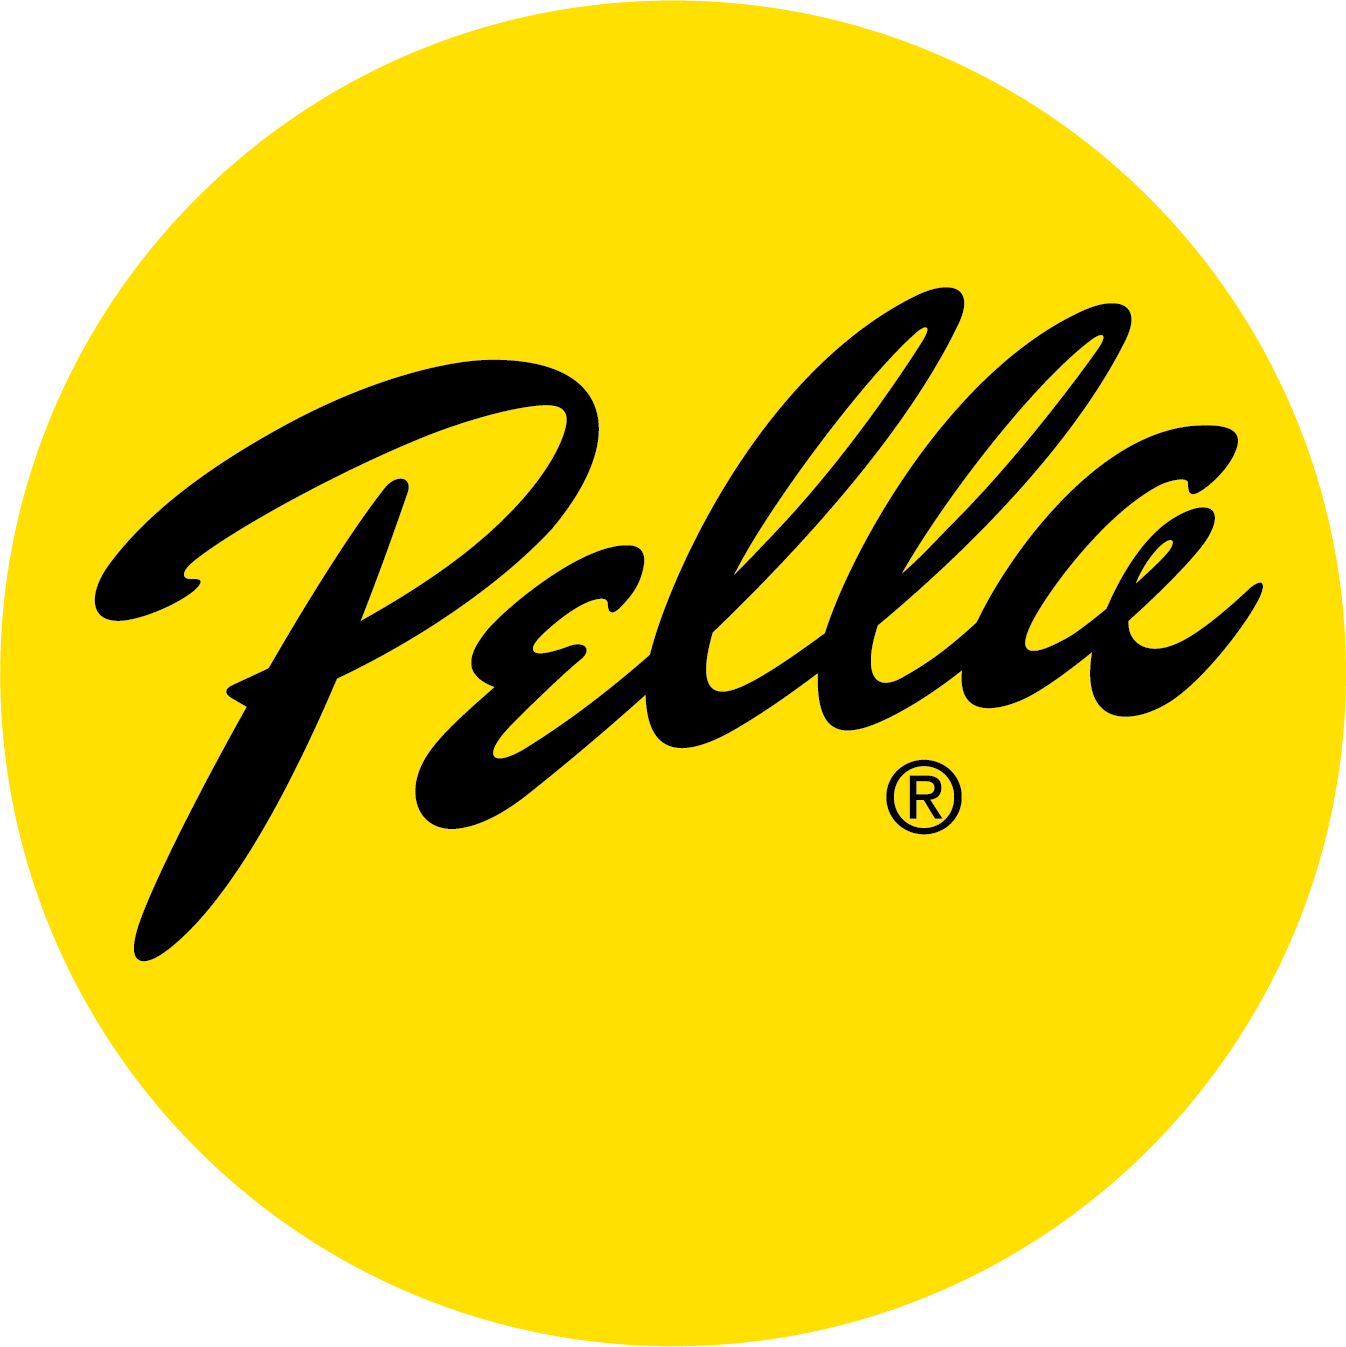 Pella Dot.png